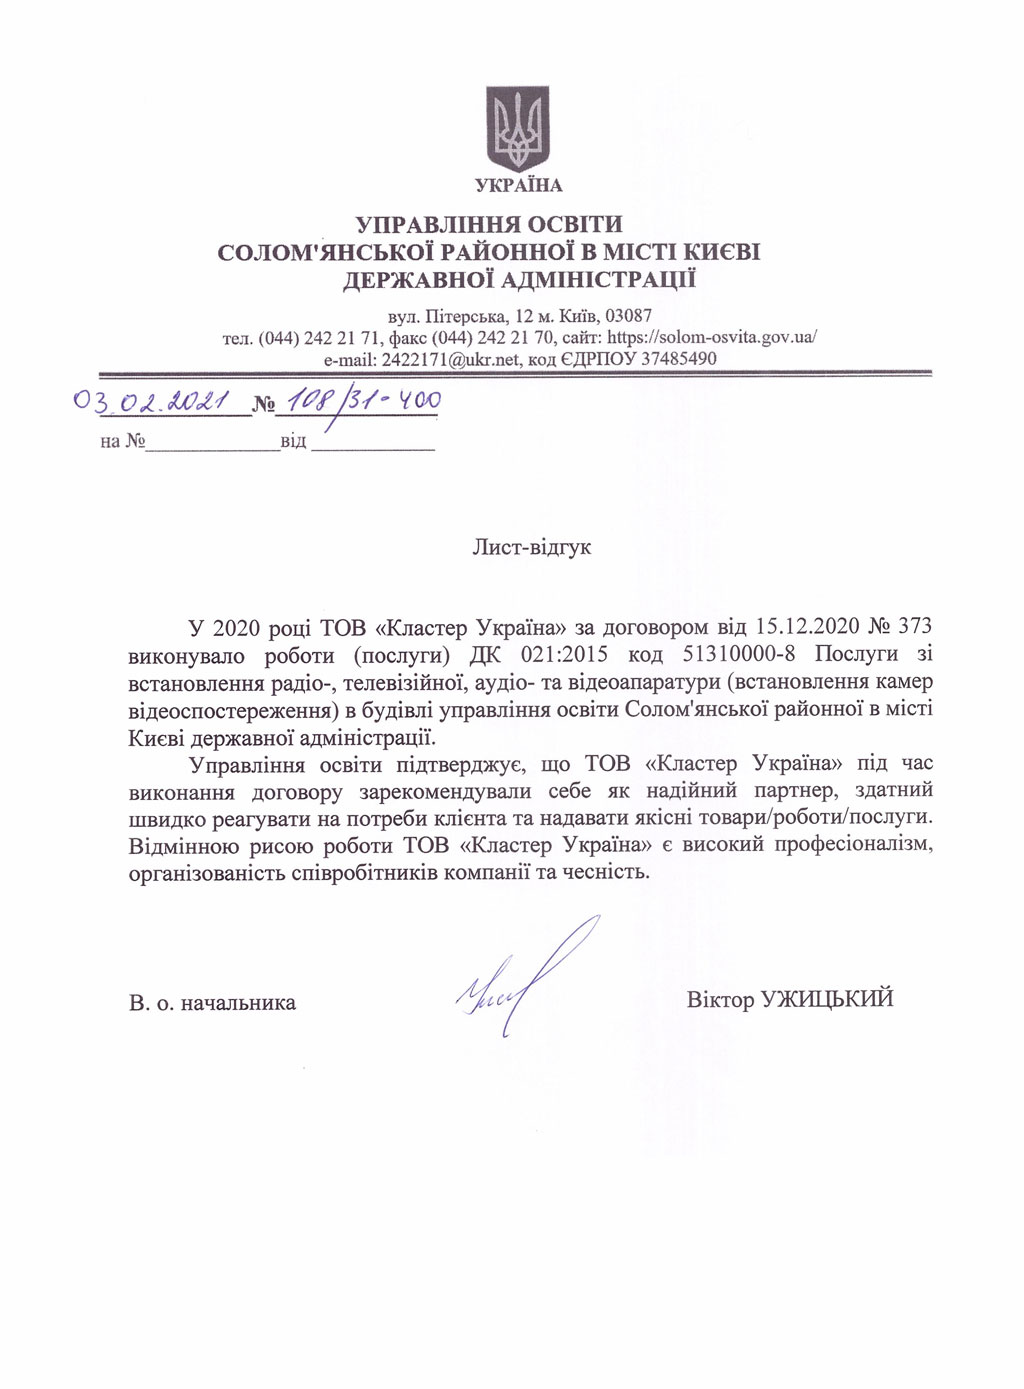 Рекомендательное письмо от Управления образования Сломенской районной в городе Киеве Государственной администрации